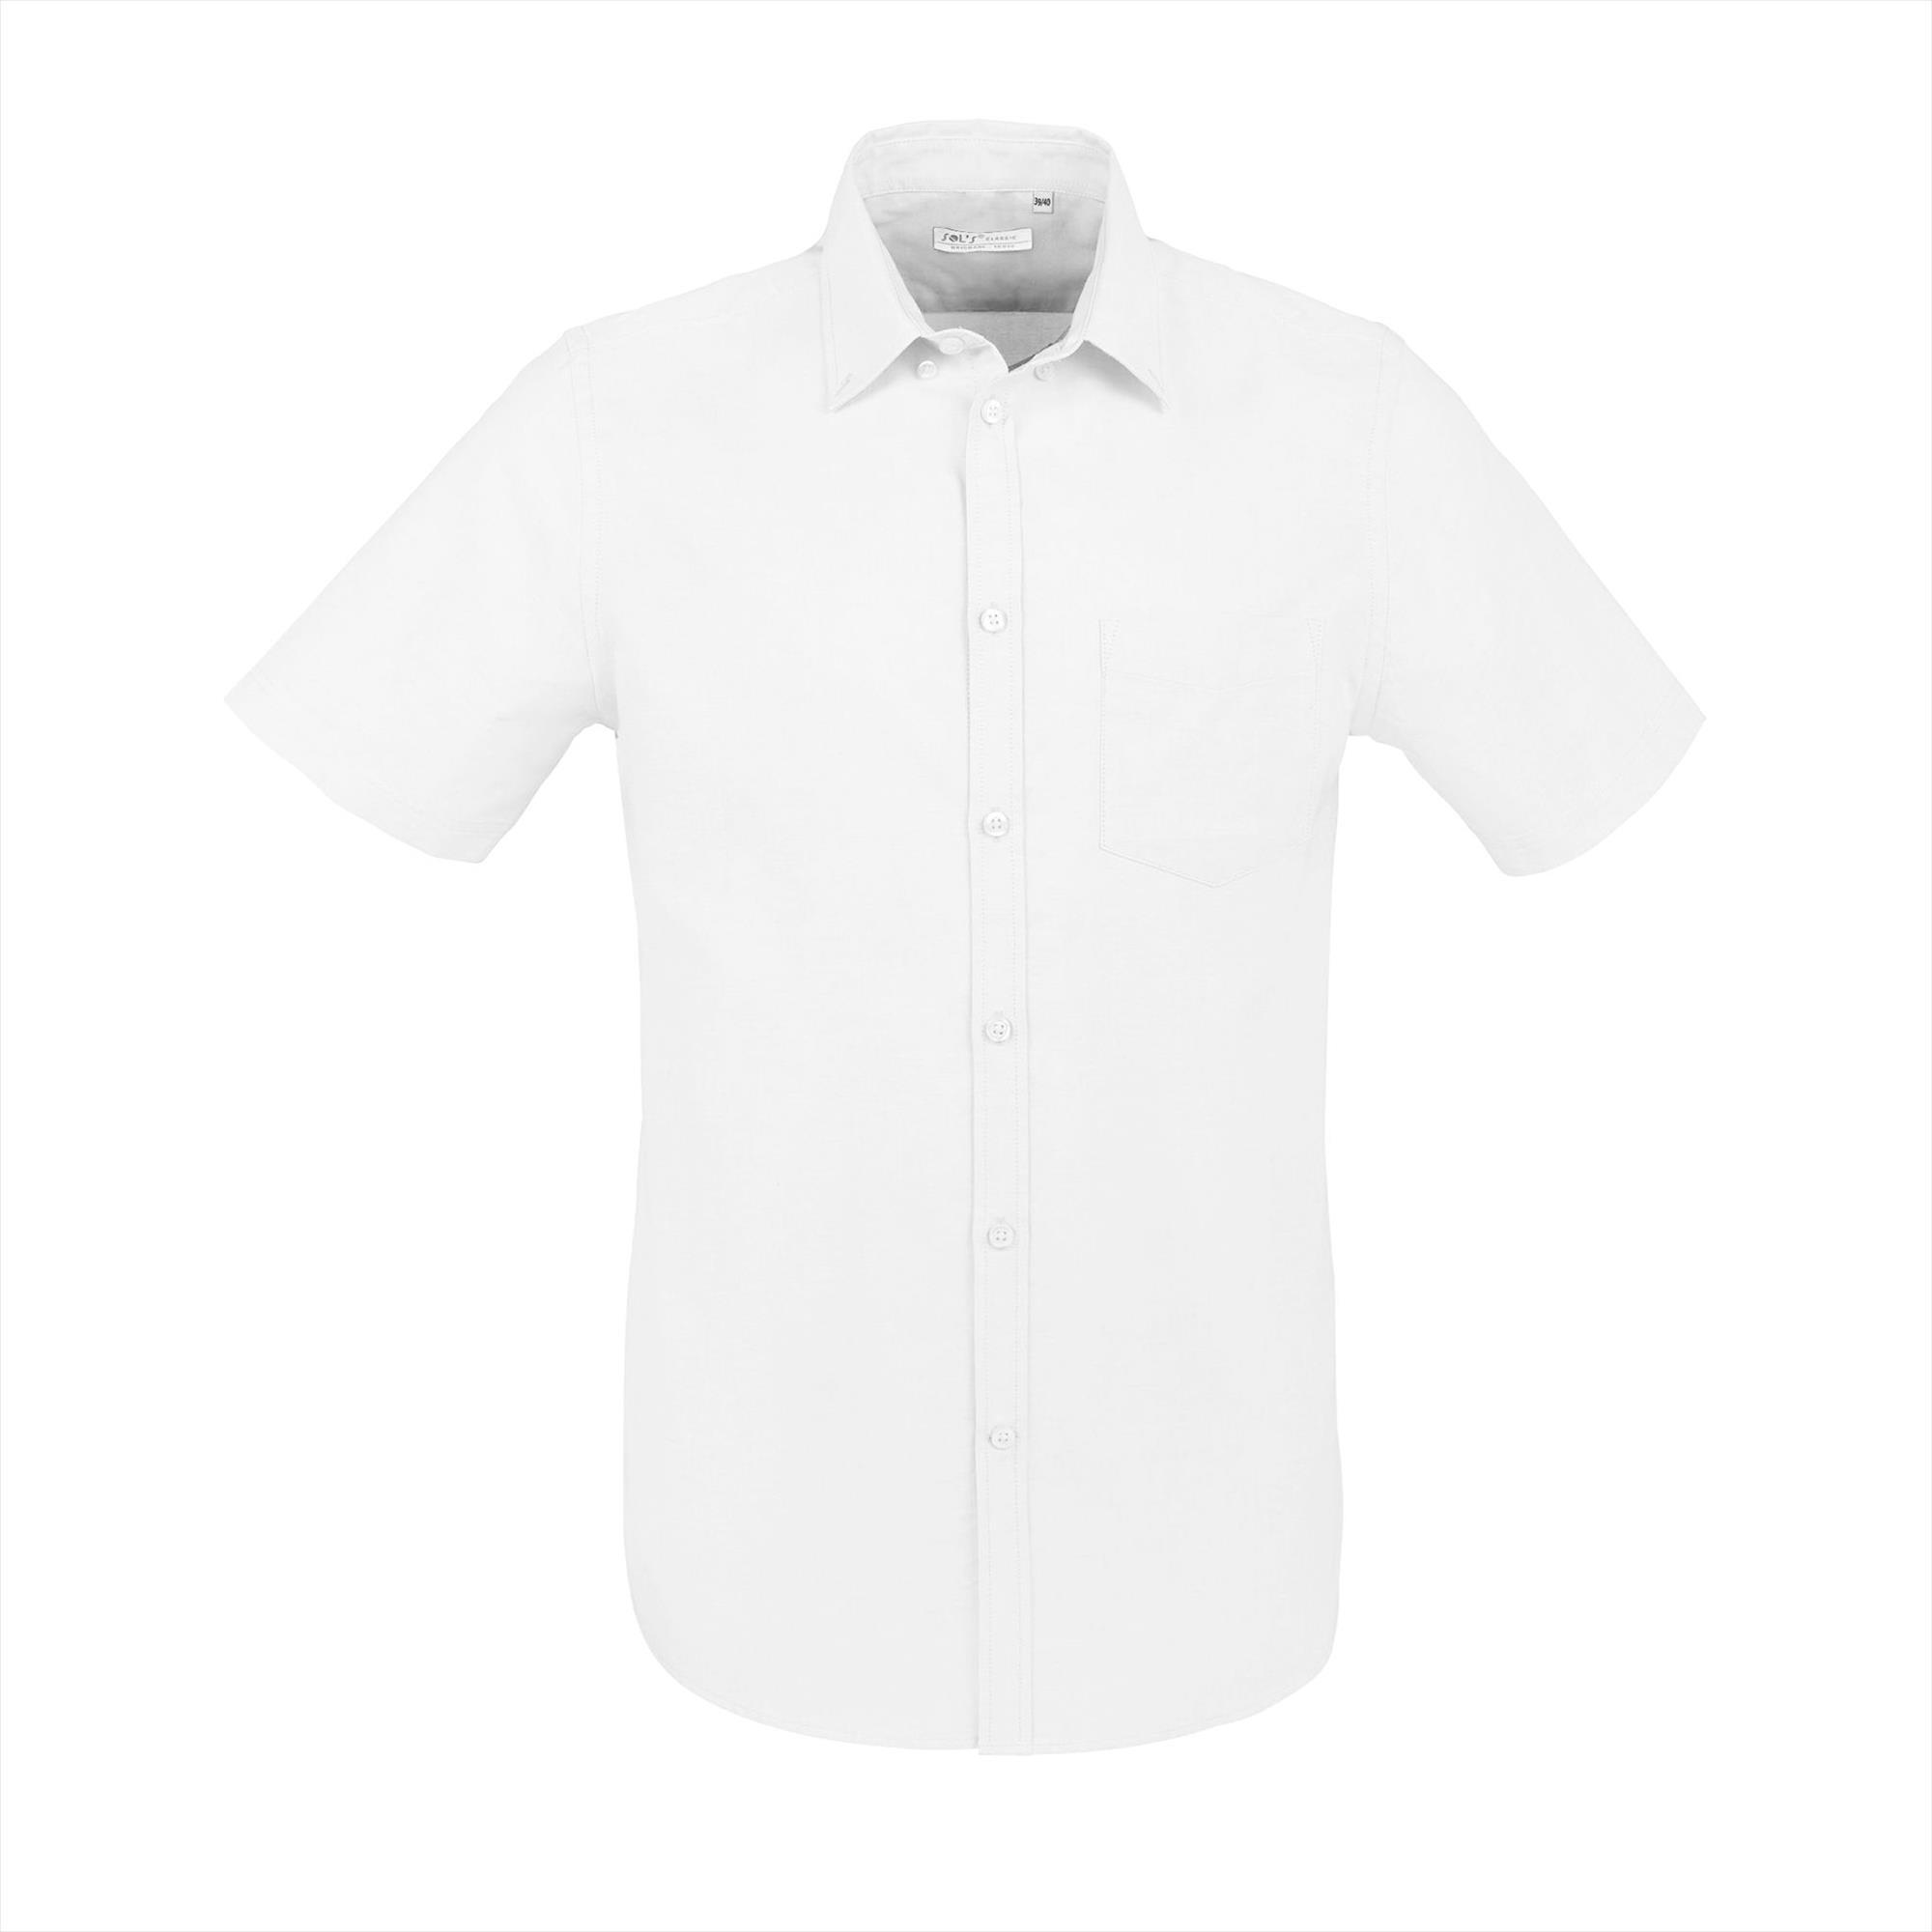 Heren overhemd korte mouw wit personaliseren